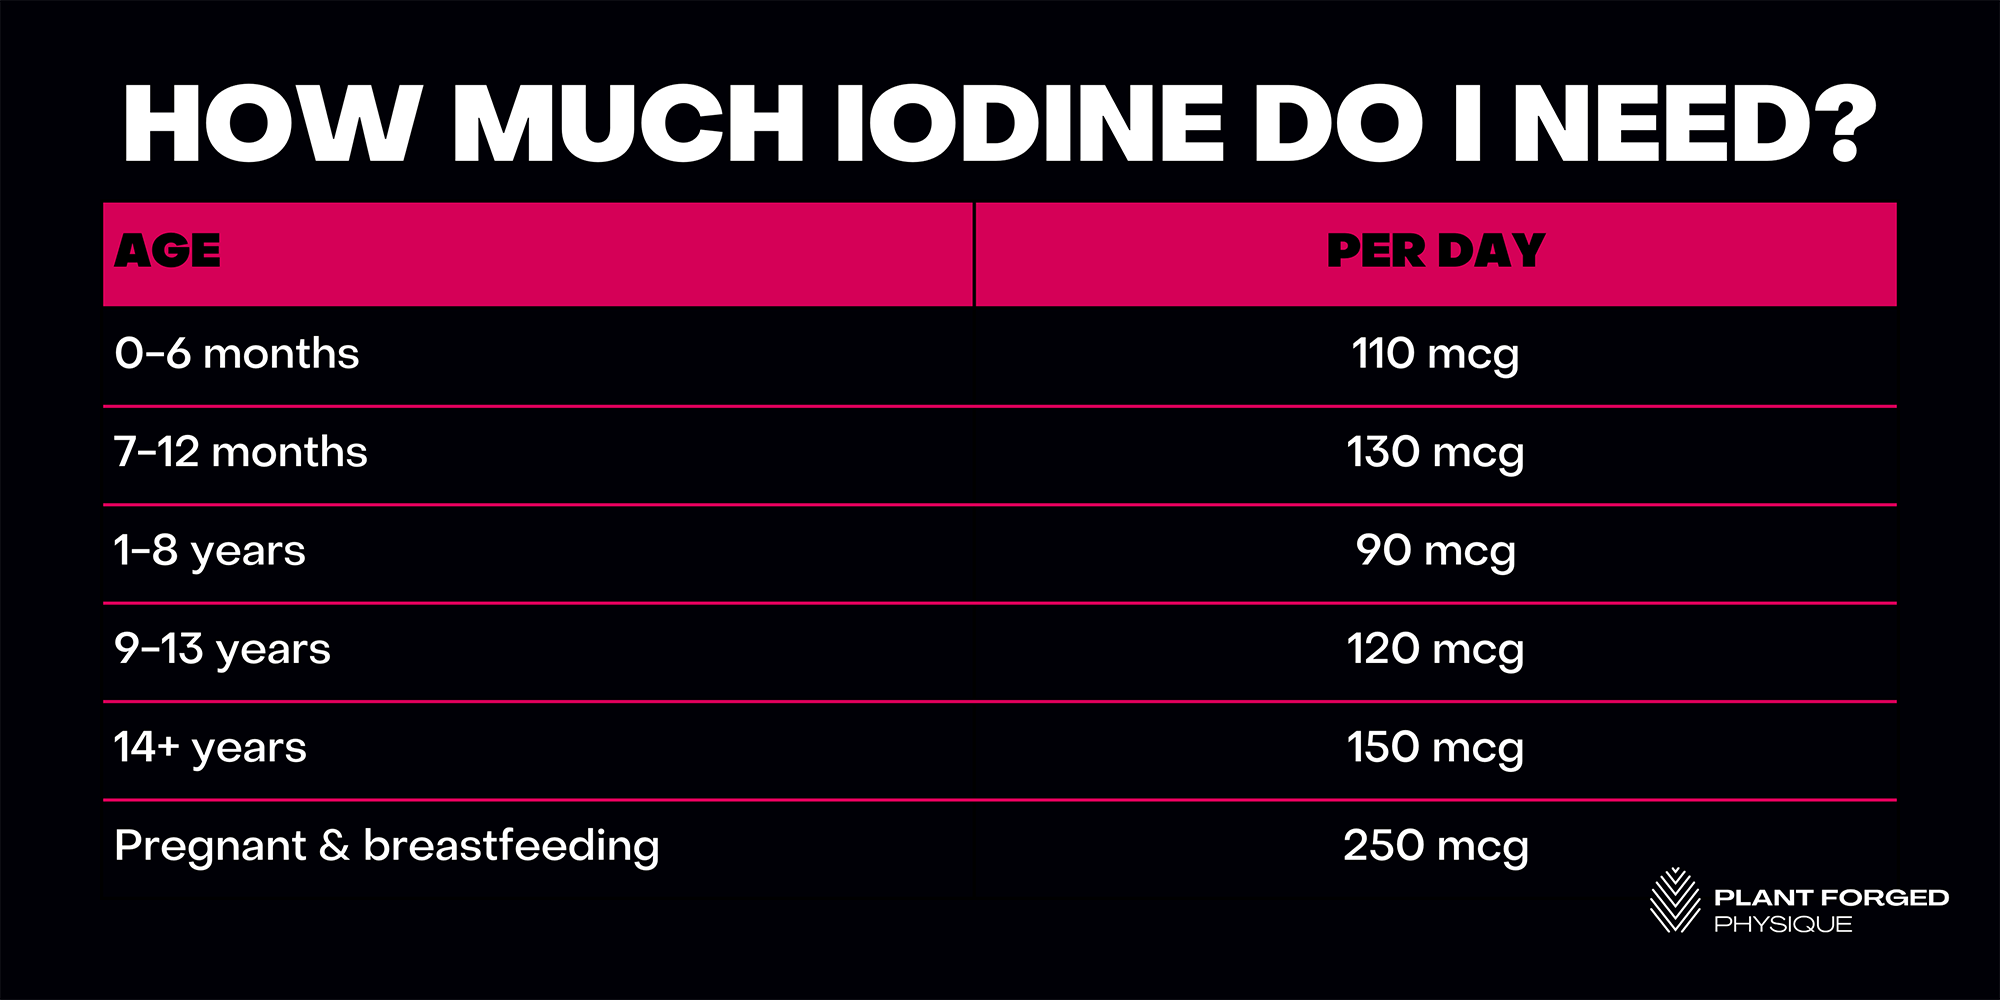 How much iodine do I need